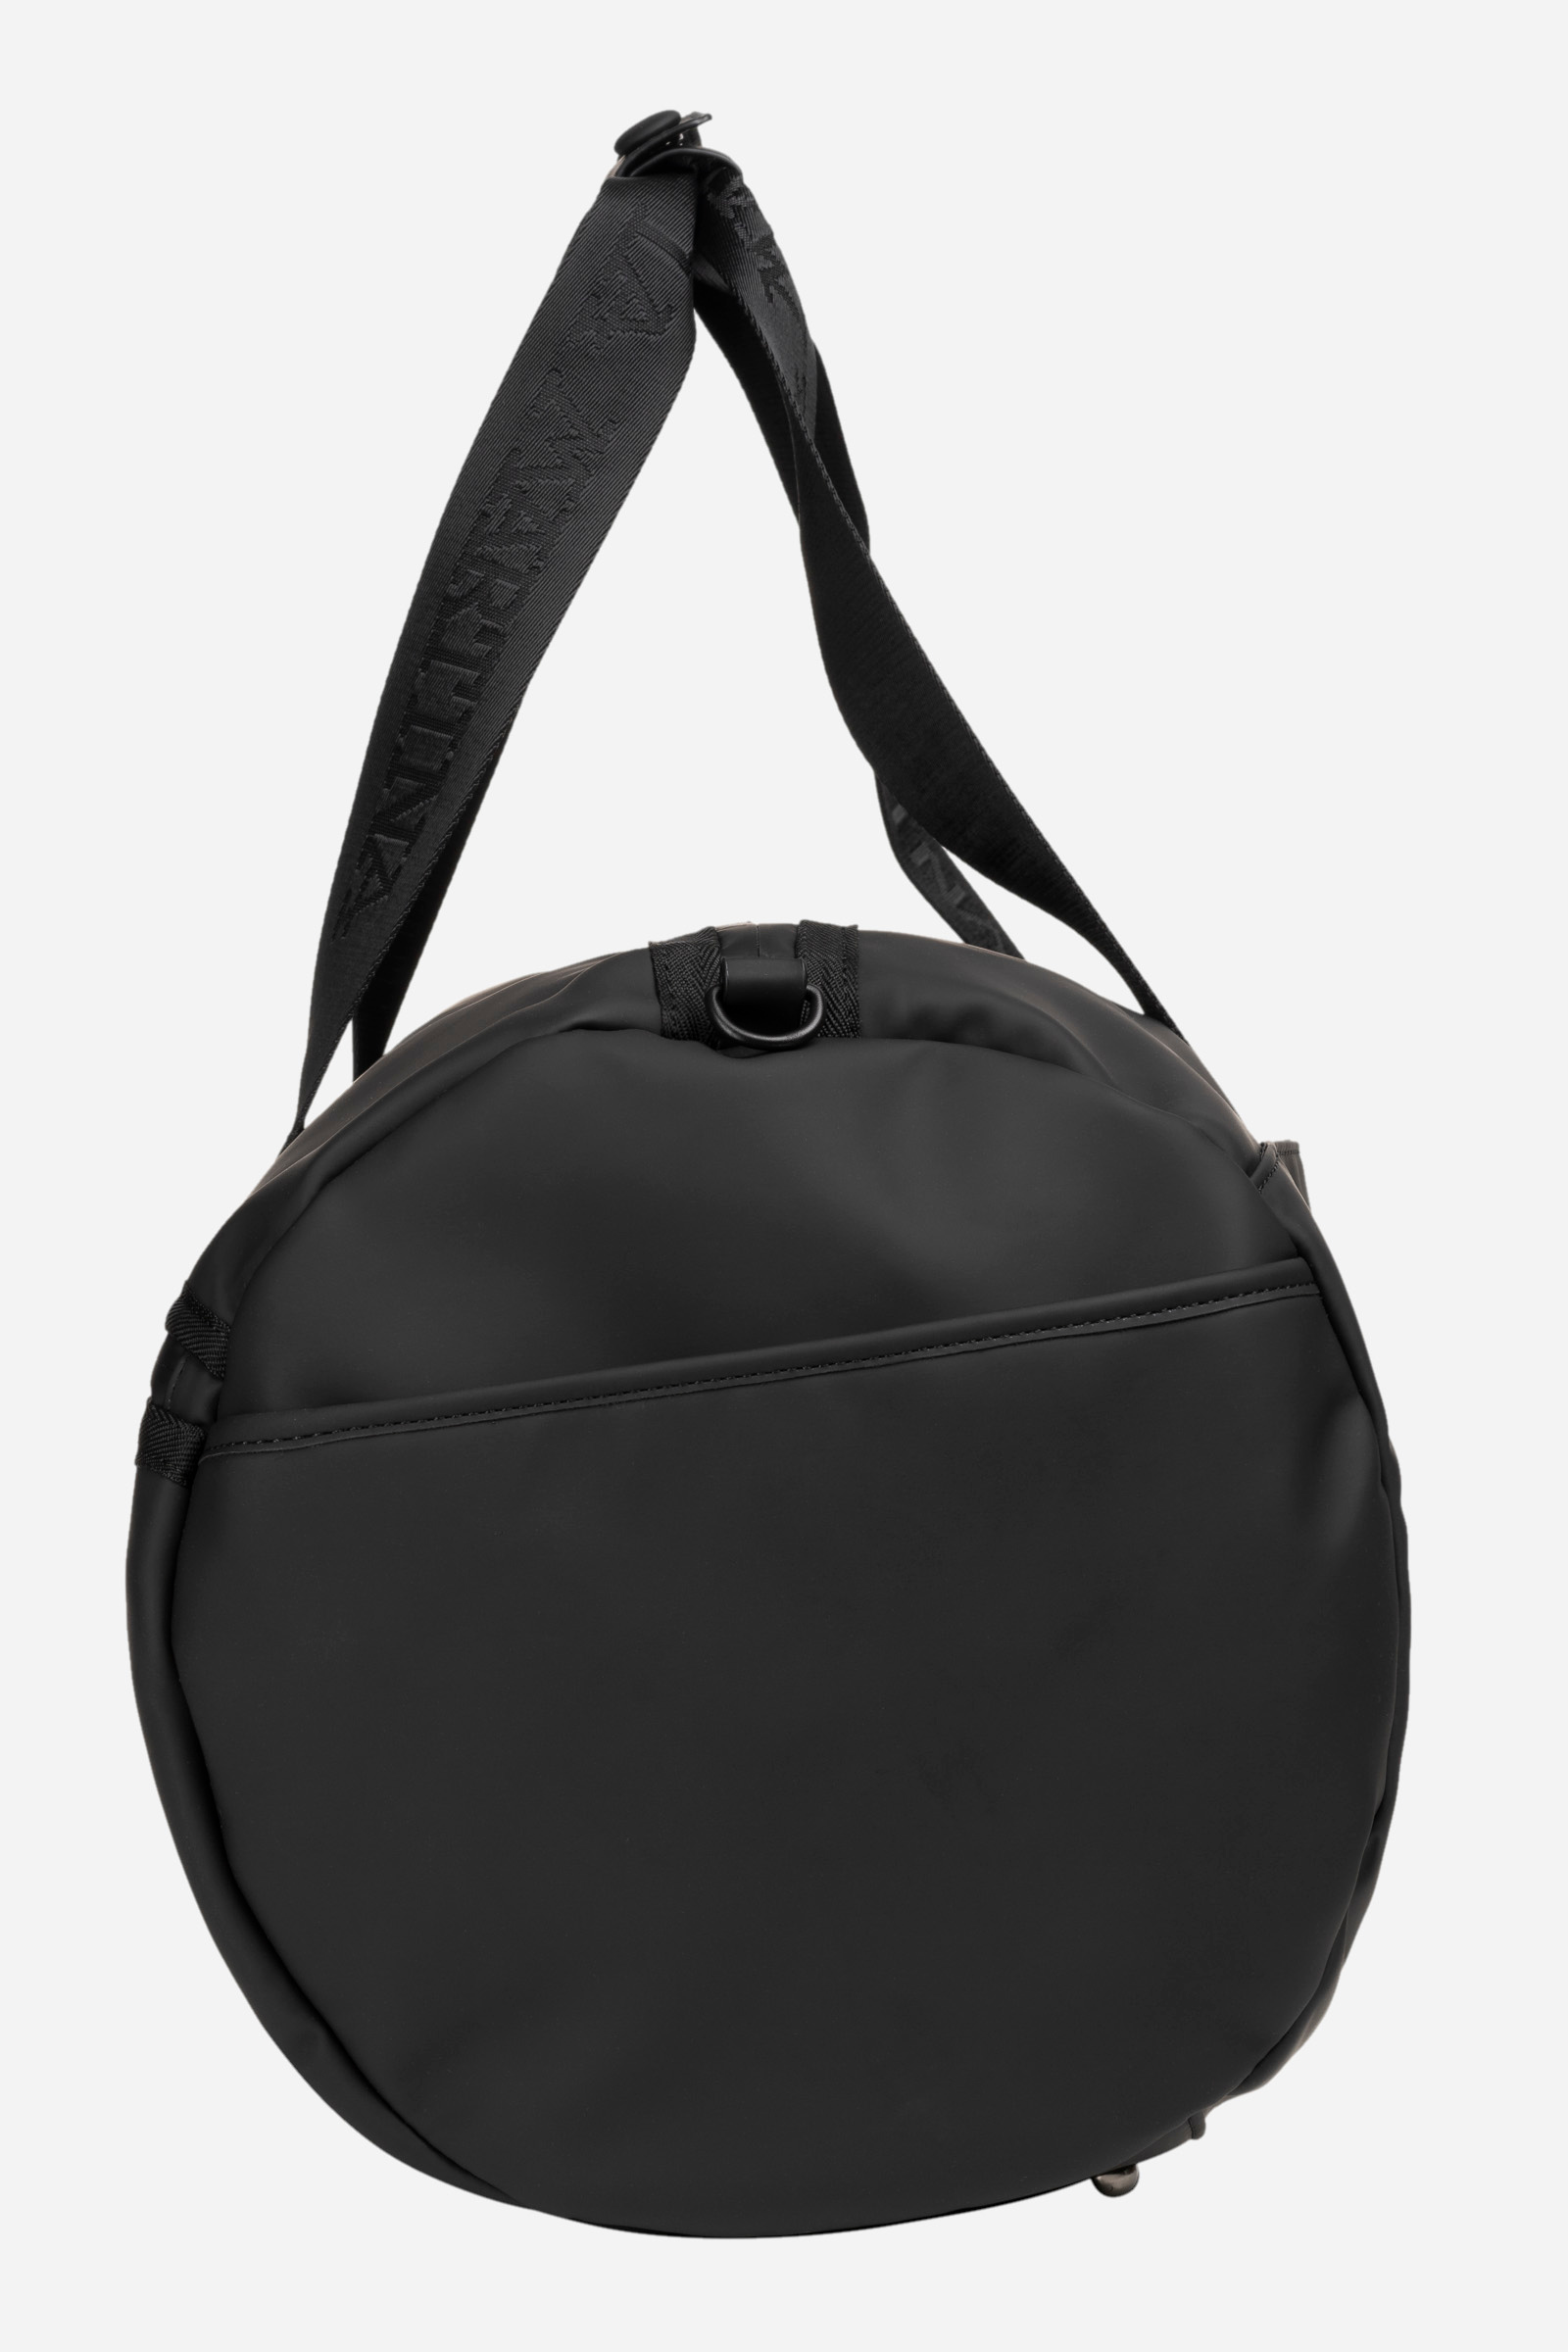 Einfarbige schwarze Tasche aus PU-Stoff - Augusto Schwarz La